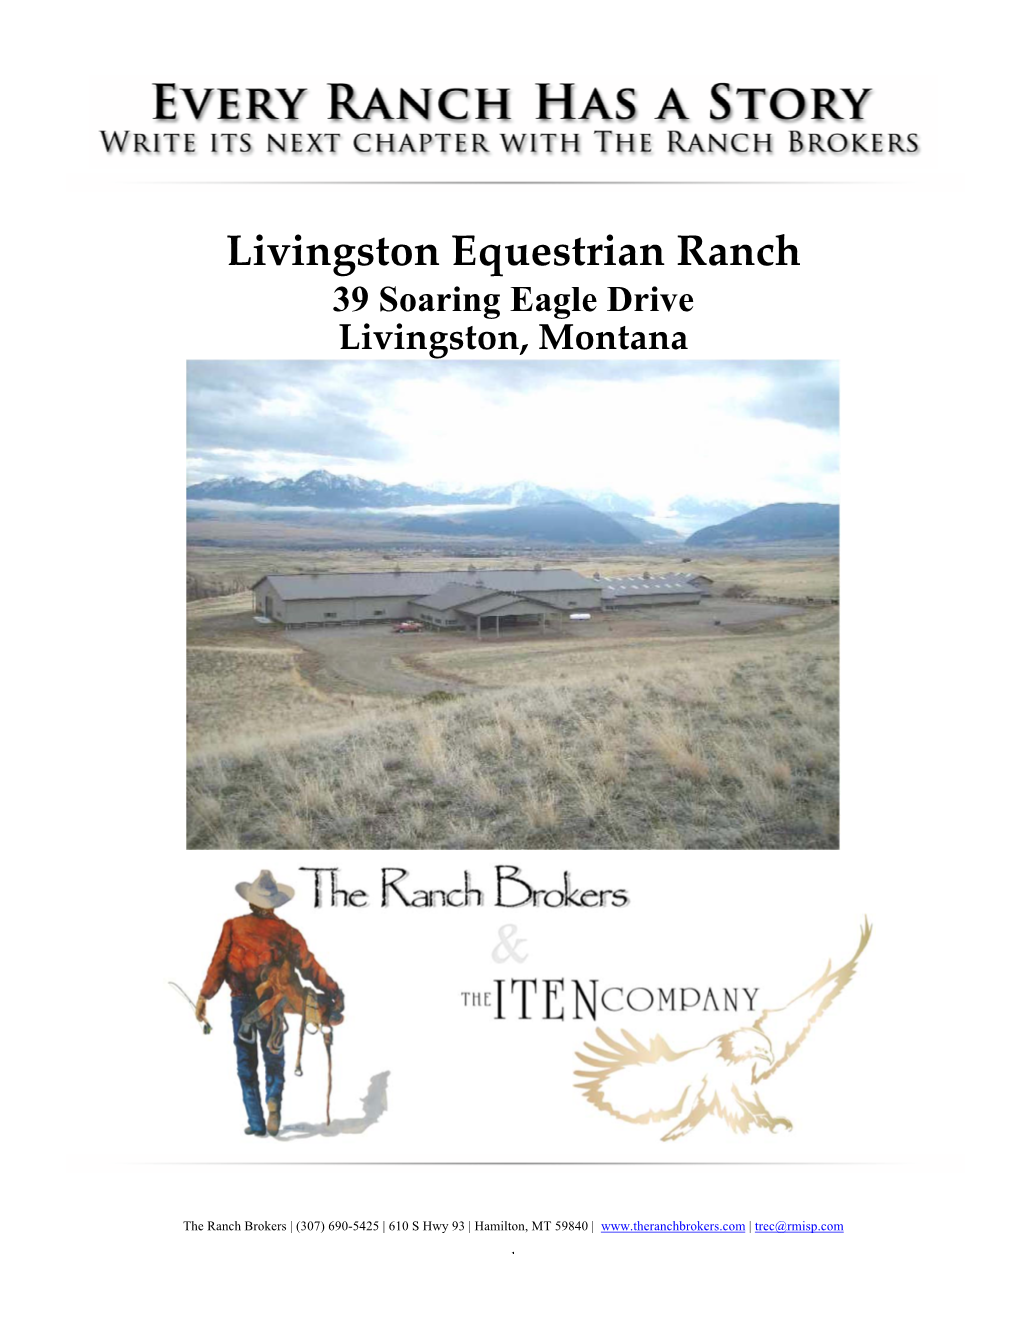 Livingston Equestrian Ranch 39 Soaring Eagle Drive Livingston, Montana